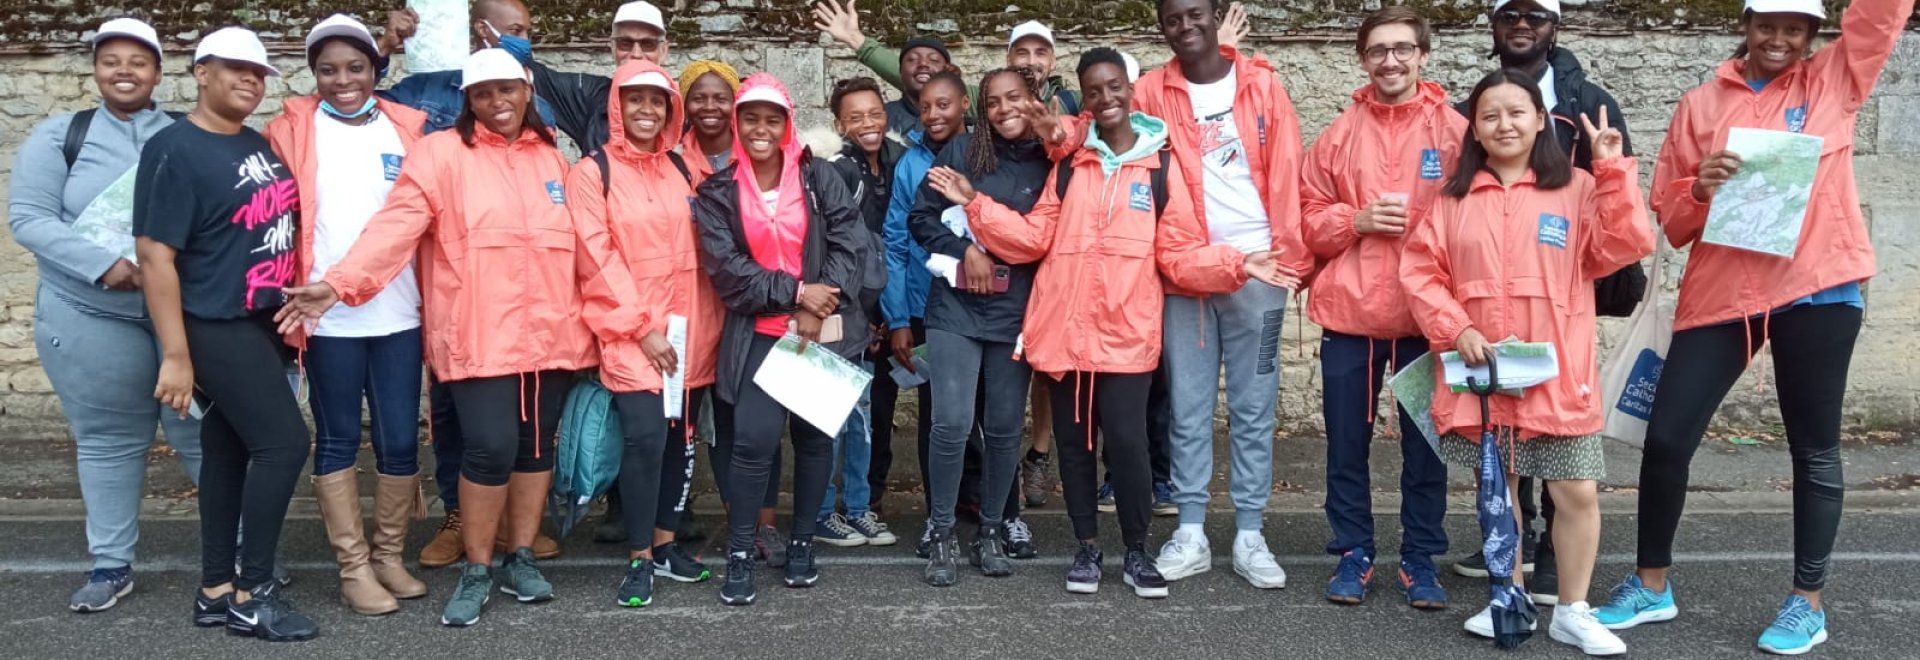 Les Young Caritas de la délégation de l'Oise